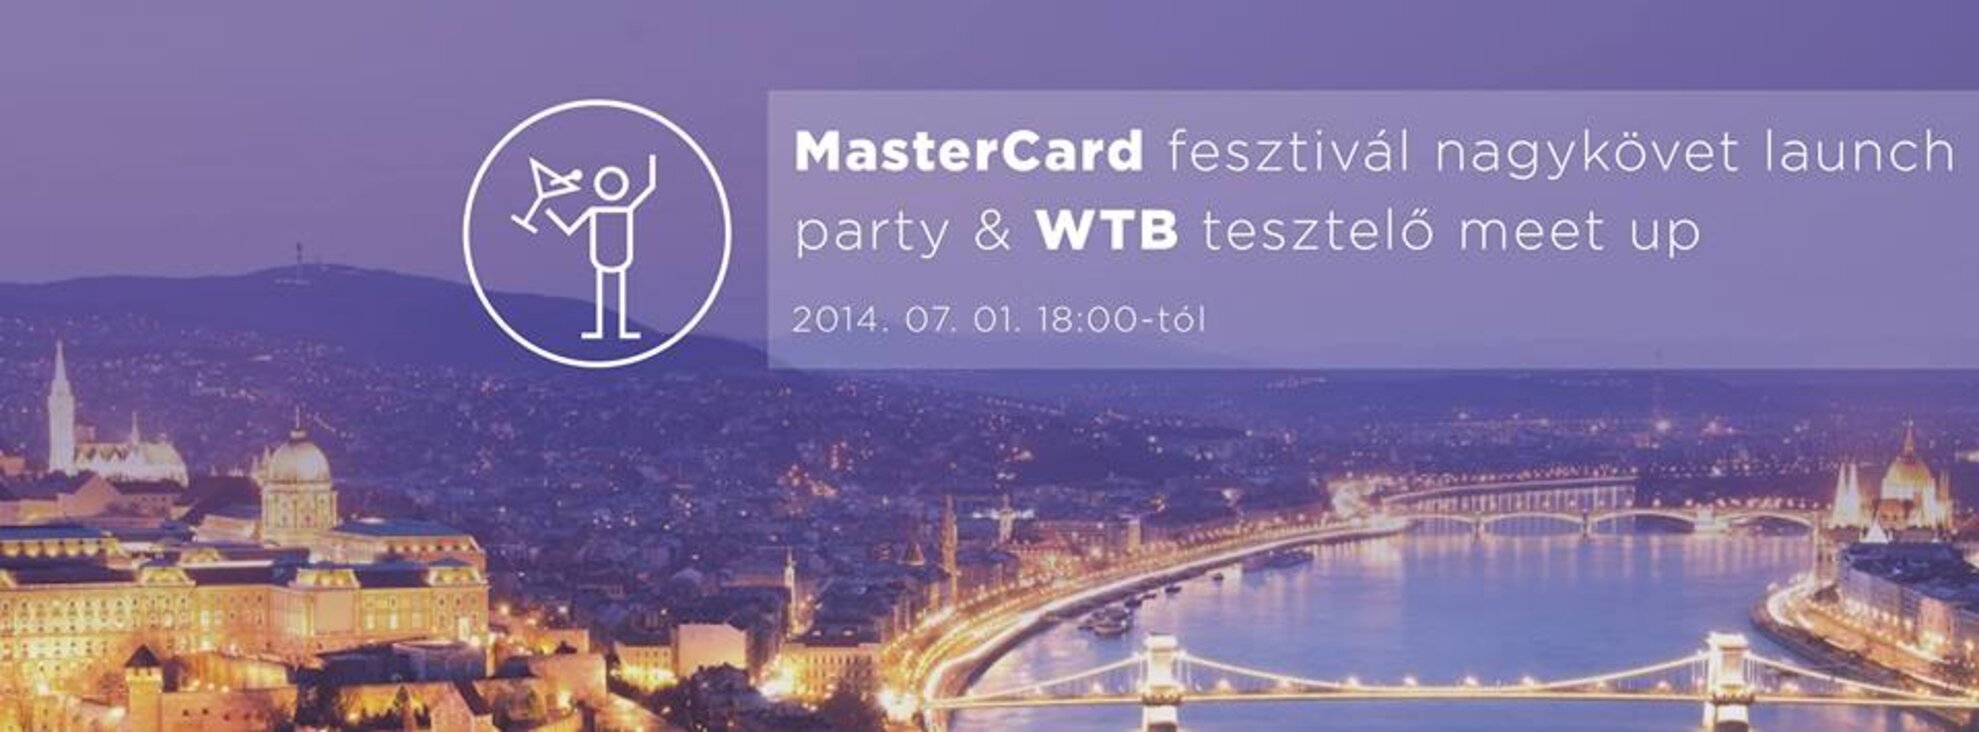 MasterCard fesztivál nagykövet launch & WTB tesztelő meet up